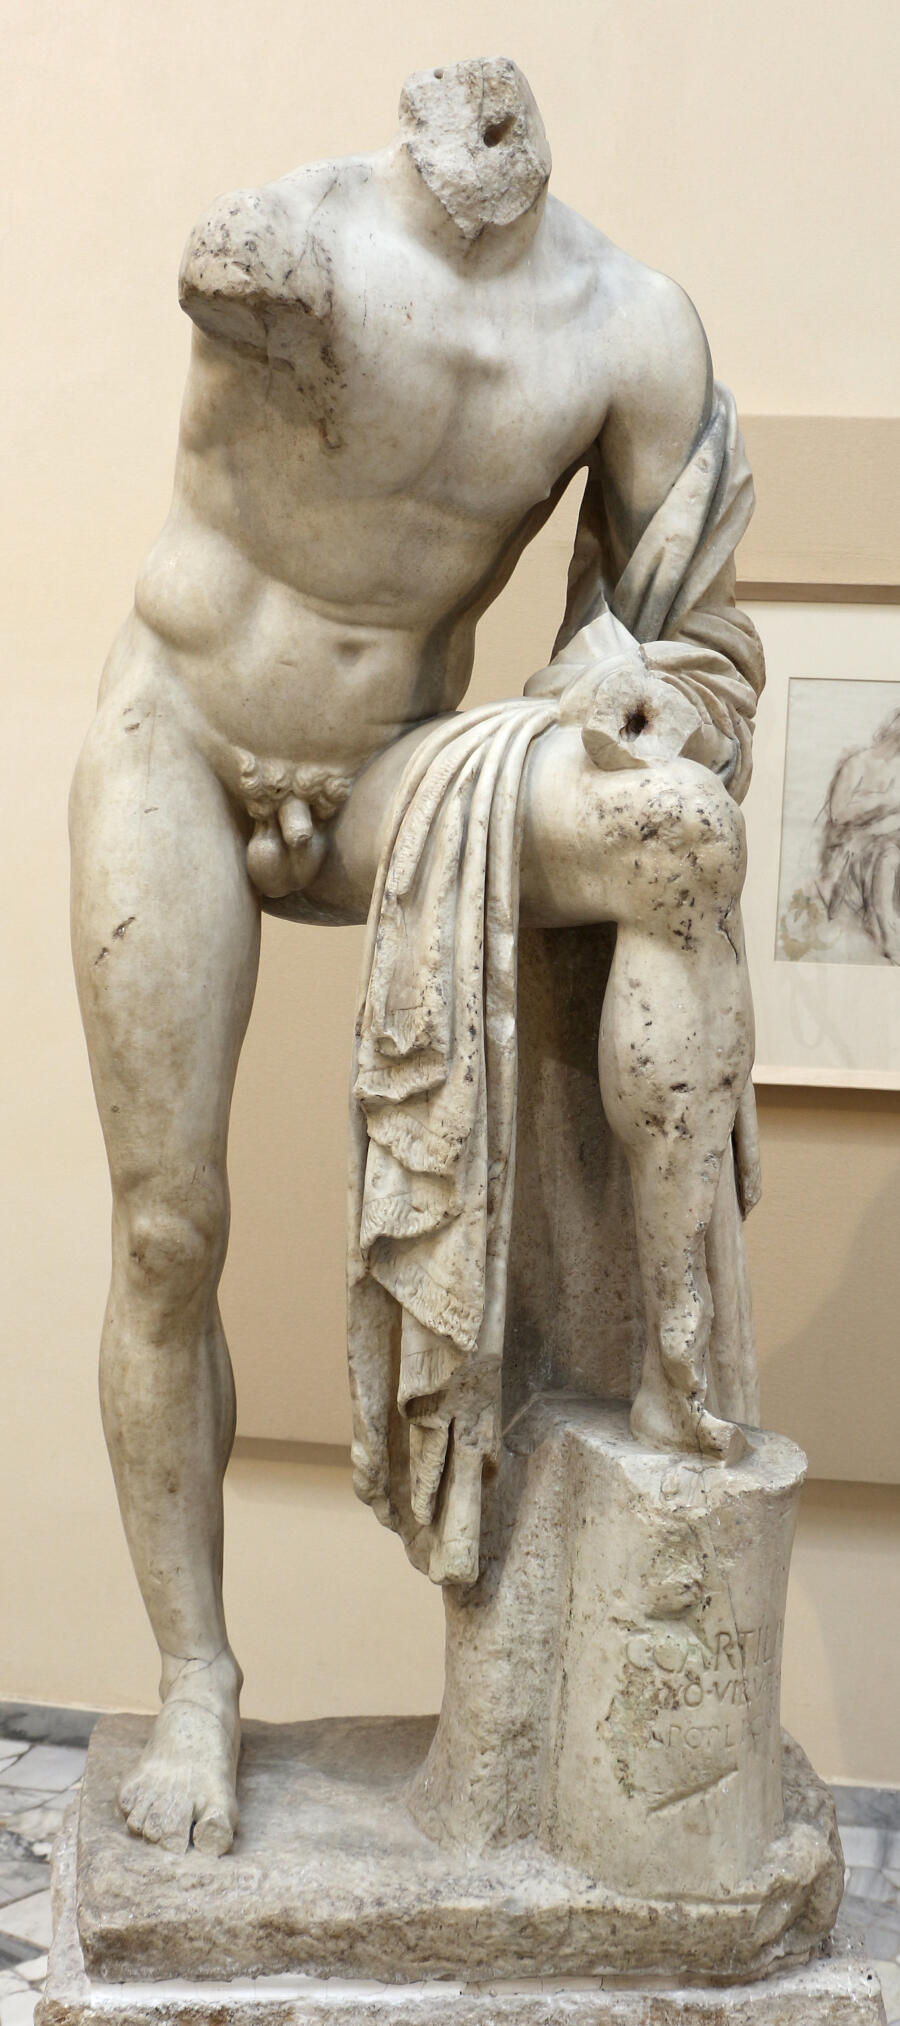 Caius Cartilius Poplicola, Ostia Museum, Sailko / Wikimedia Commons CC BY